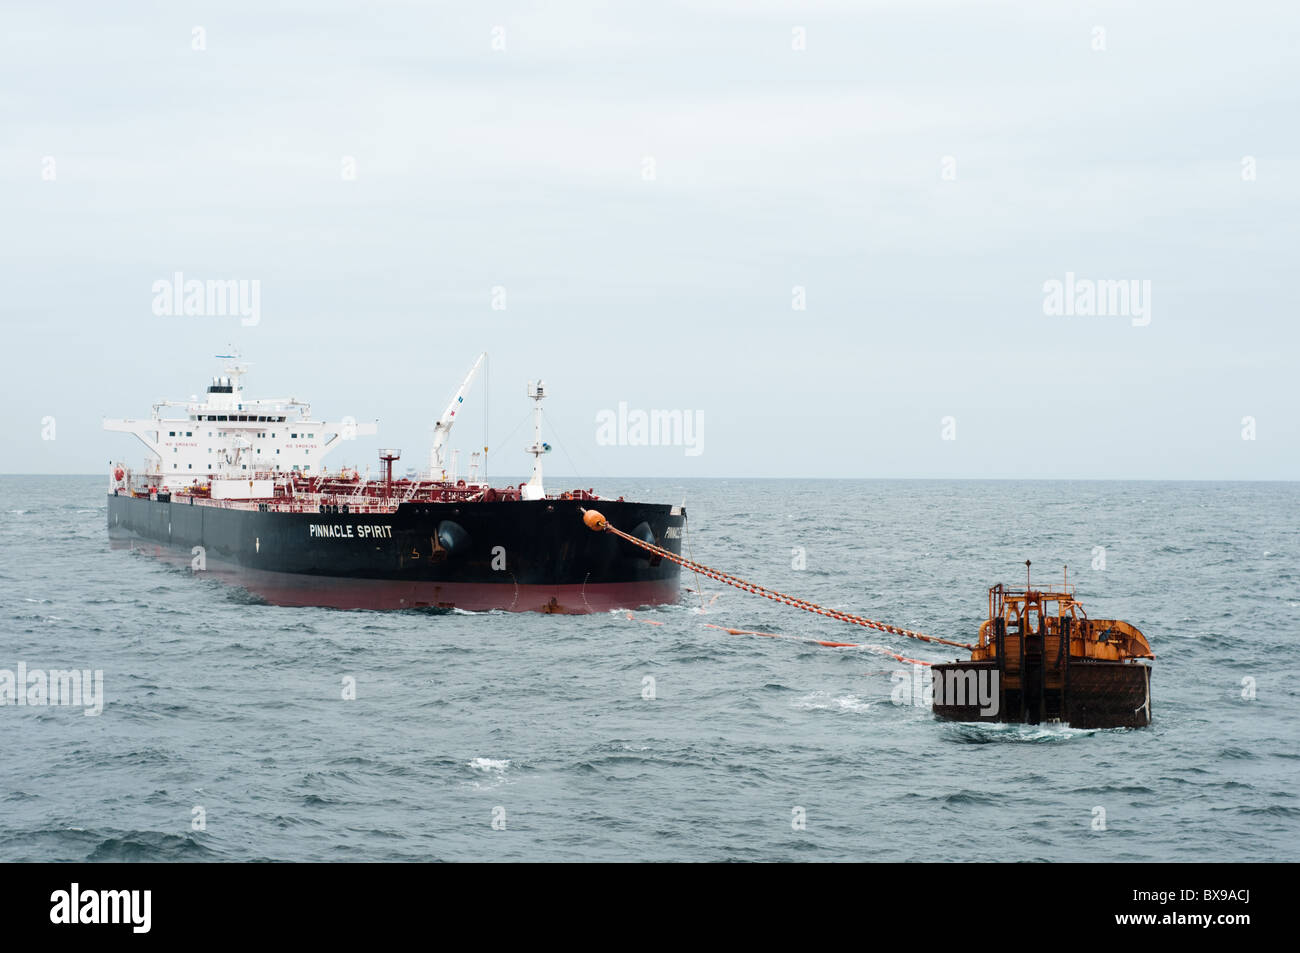 Oil Tanker navire ancré dans la zone au large des côtes en attente d'être chargés par une plate-forme pétrolière de production de Petrobras, la compagnie pétrolière brésilienne. Banque D'Images